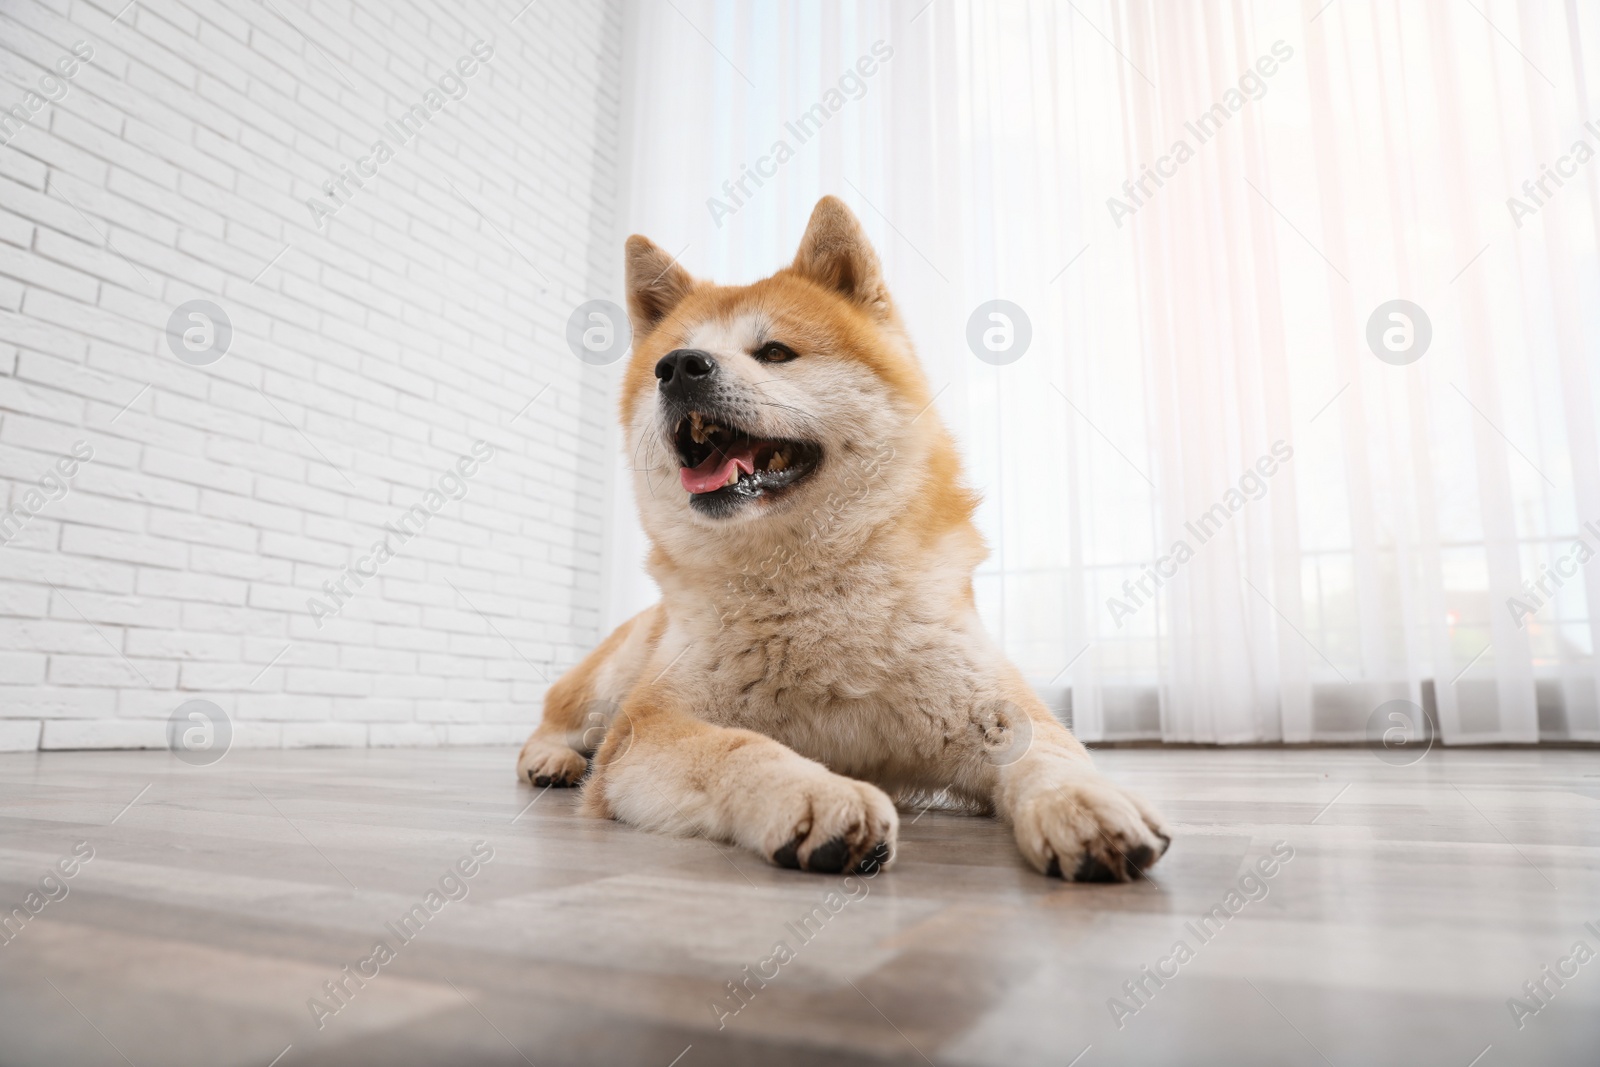 Photo of Cute Akita Inu dog on floor near window indoors